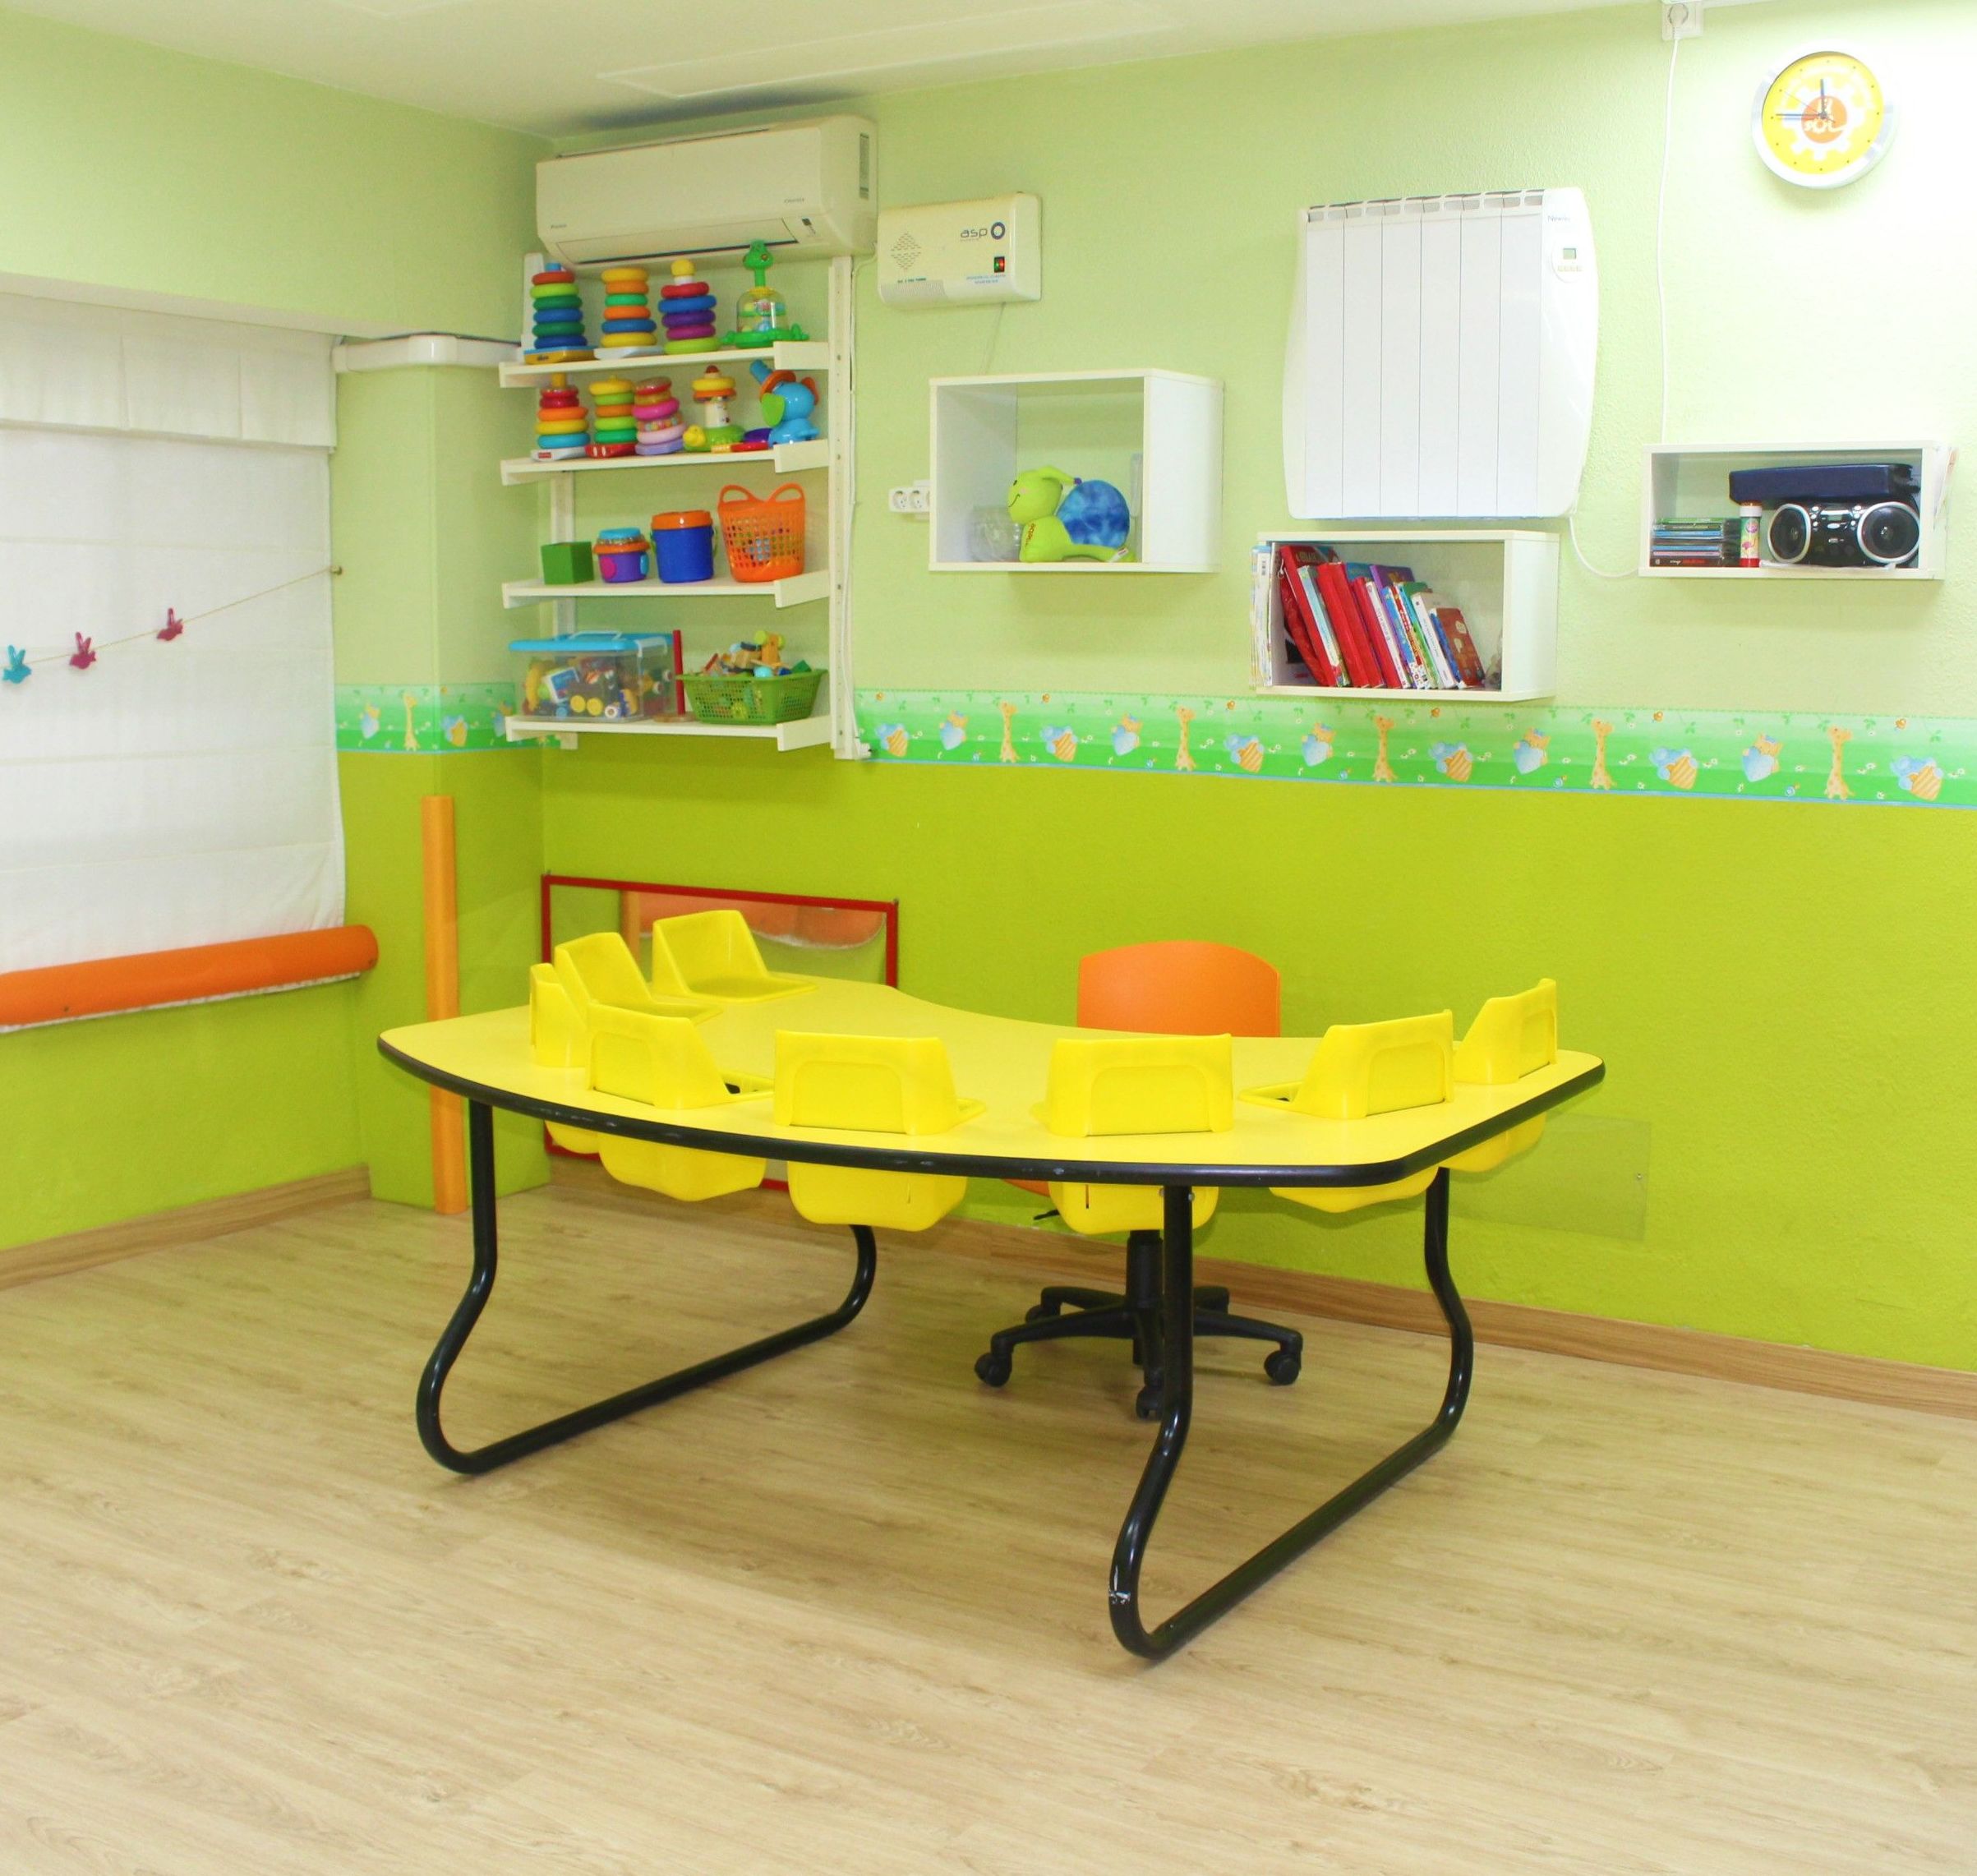 Foto 12 de Guarderías y Escuelas infantiles en Madrid | Escuela Infantil Pippo